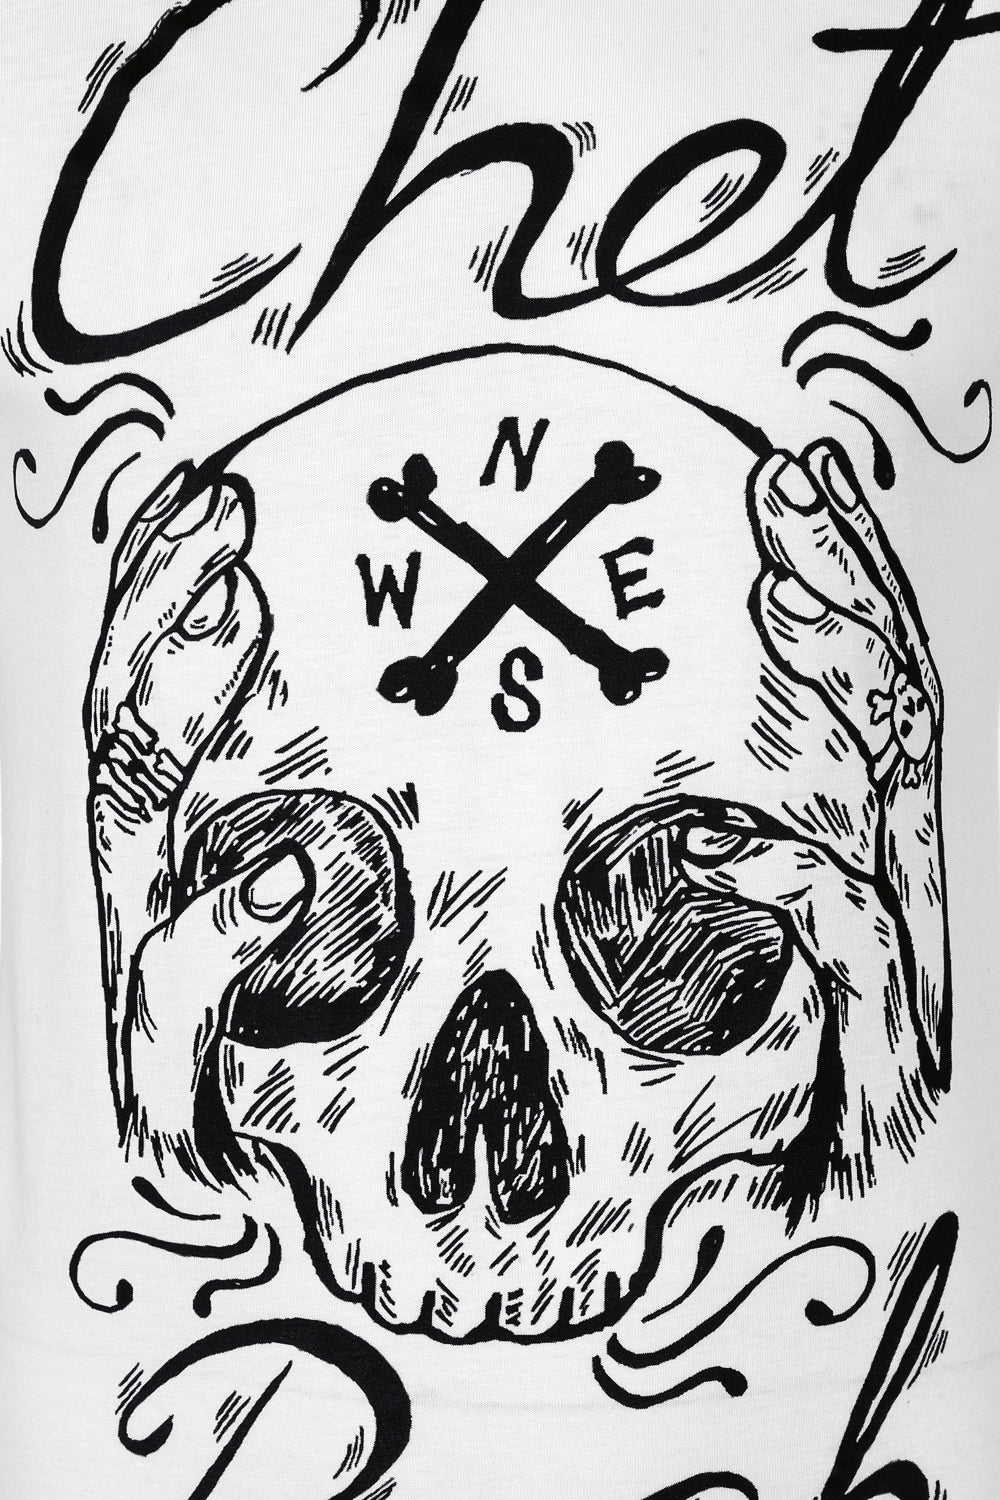 Chet Rock Skull t-shirt